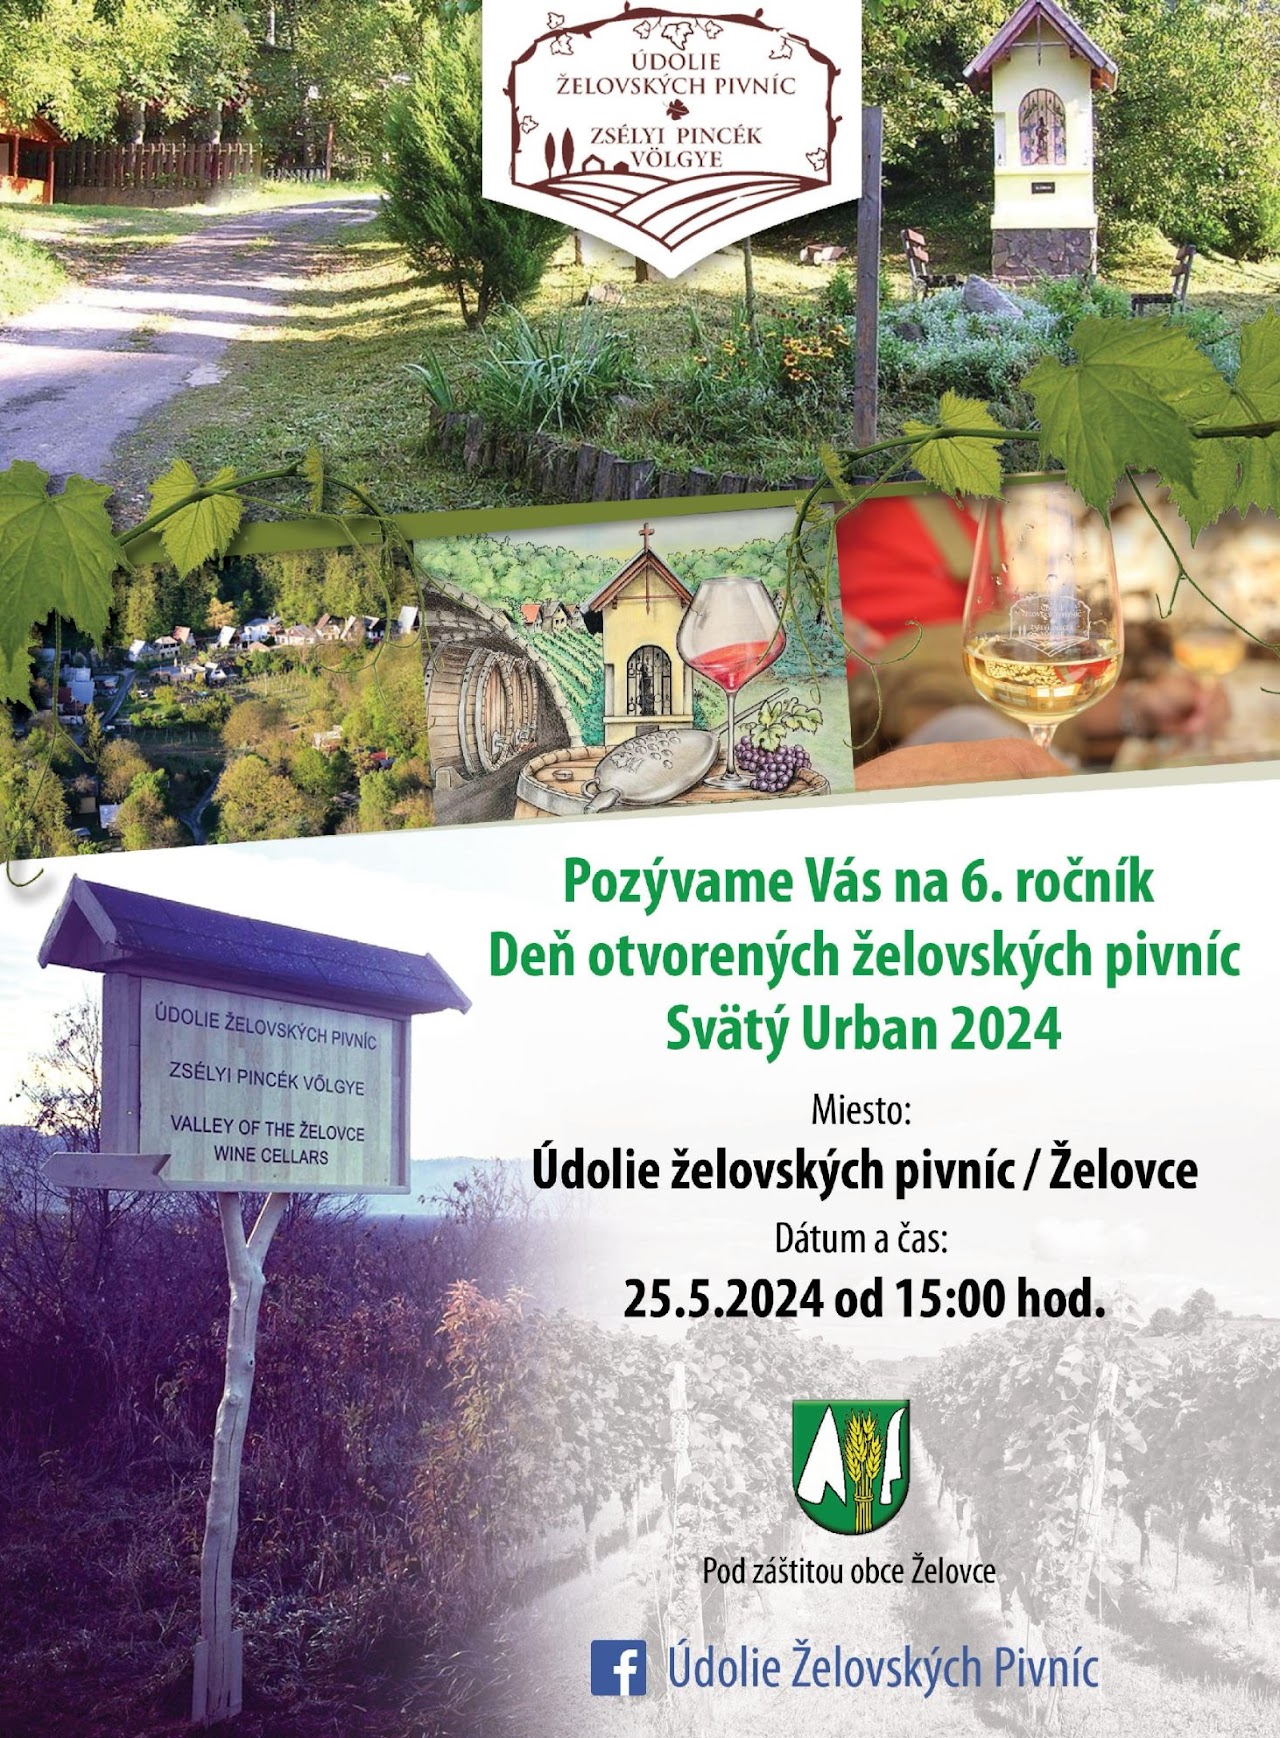 De otvorench elovskch pivnc - Sv. Urban 2024 elovce - 6. ronk